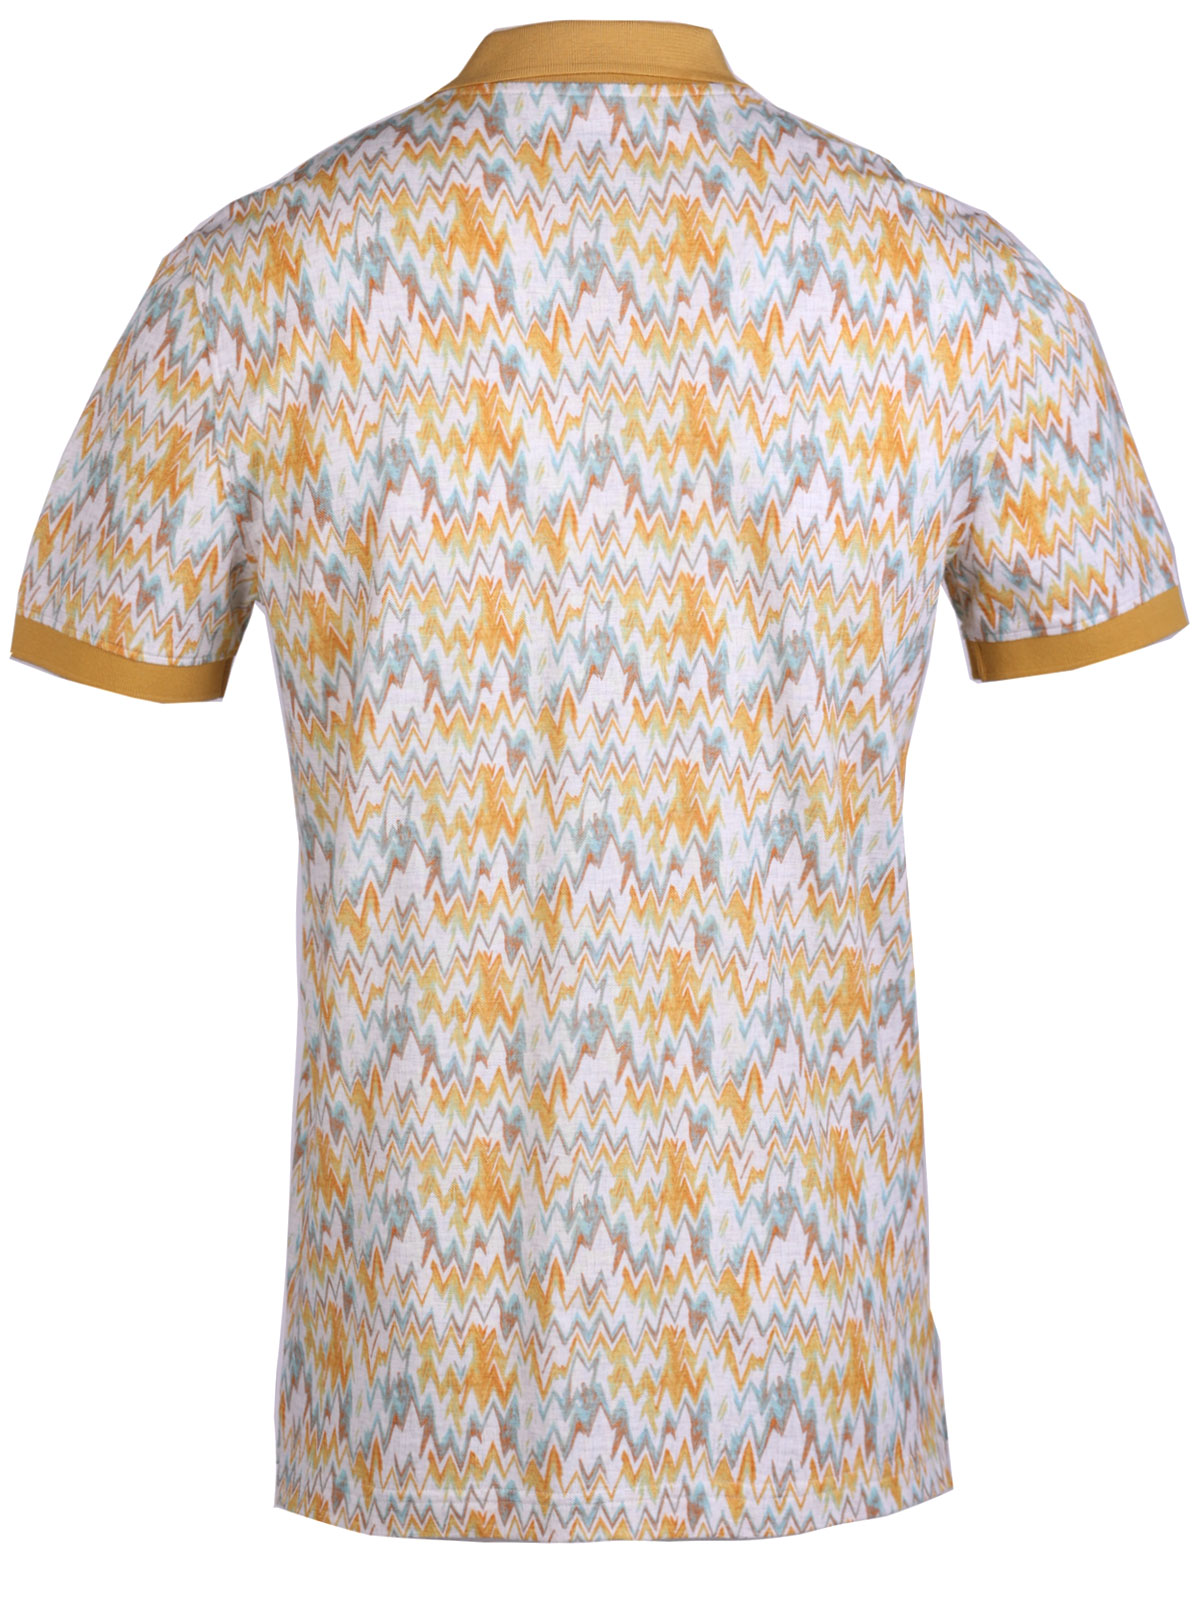 Μπλούζα με κίτρινες και μπλε φιγούρες - 93449 € 42.74 img2